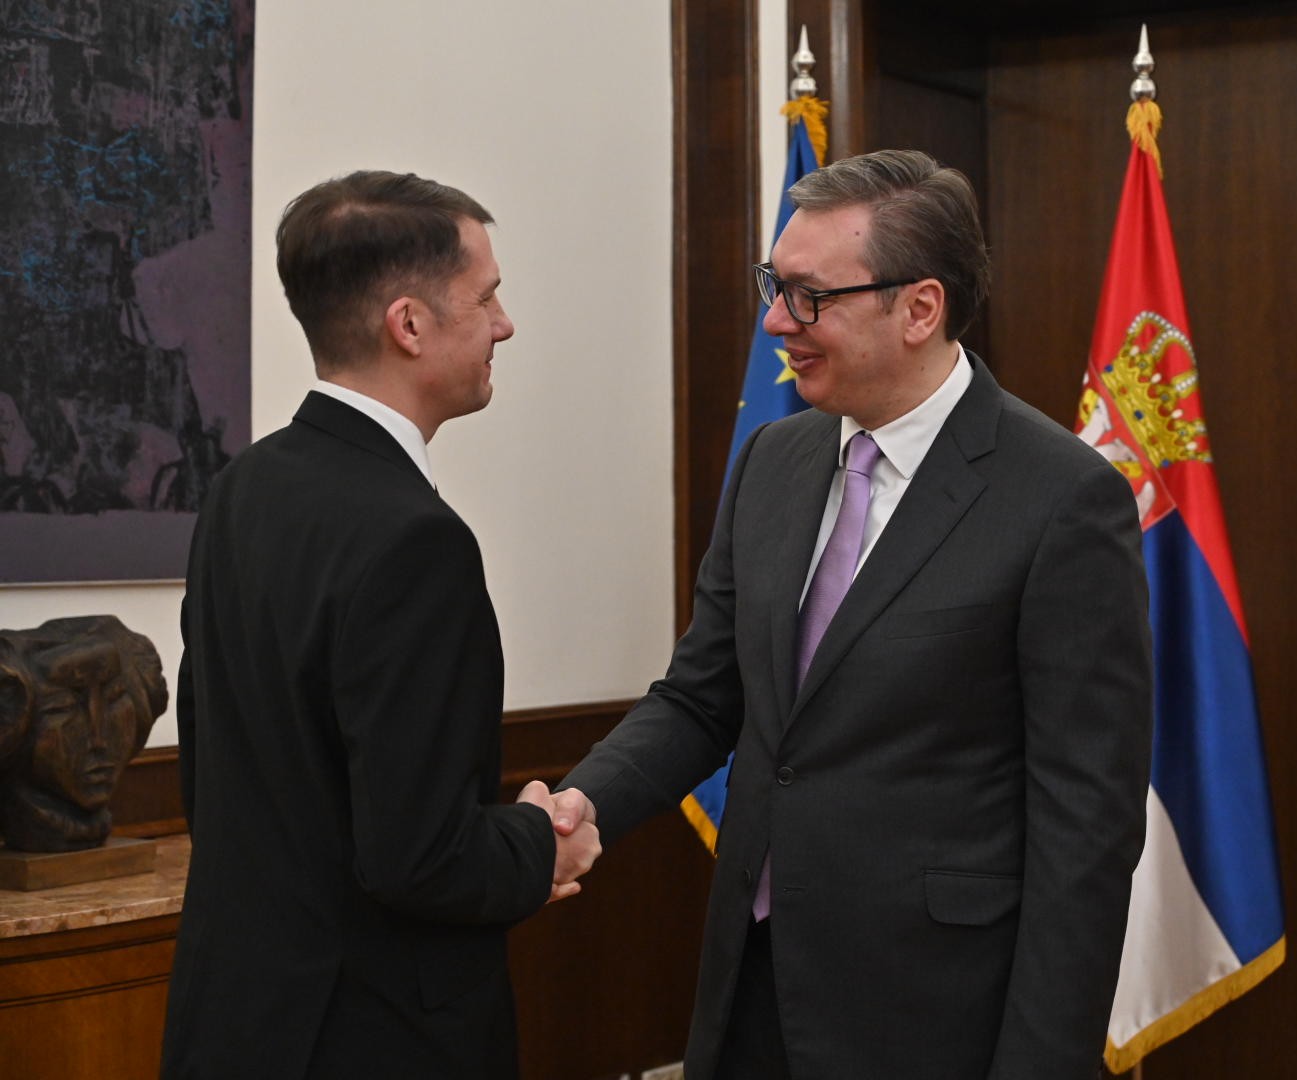 Pásztor Bálint VMSZ-elnököt kedden Belgrádban fogadta Alekszandar Vucsics szerb elnök Fotó: Pásztor Bálint Facebook oldala